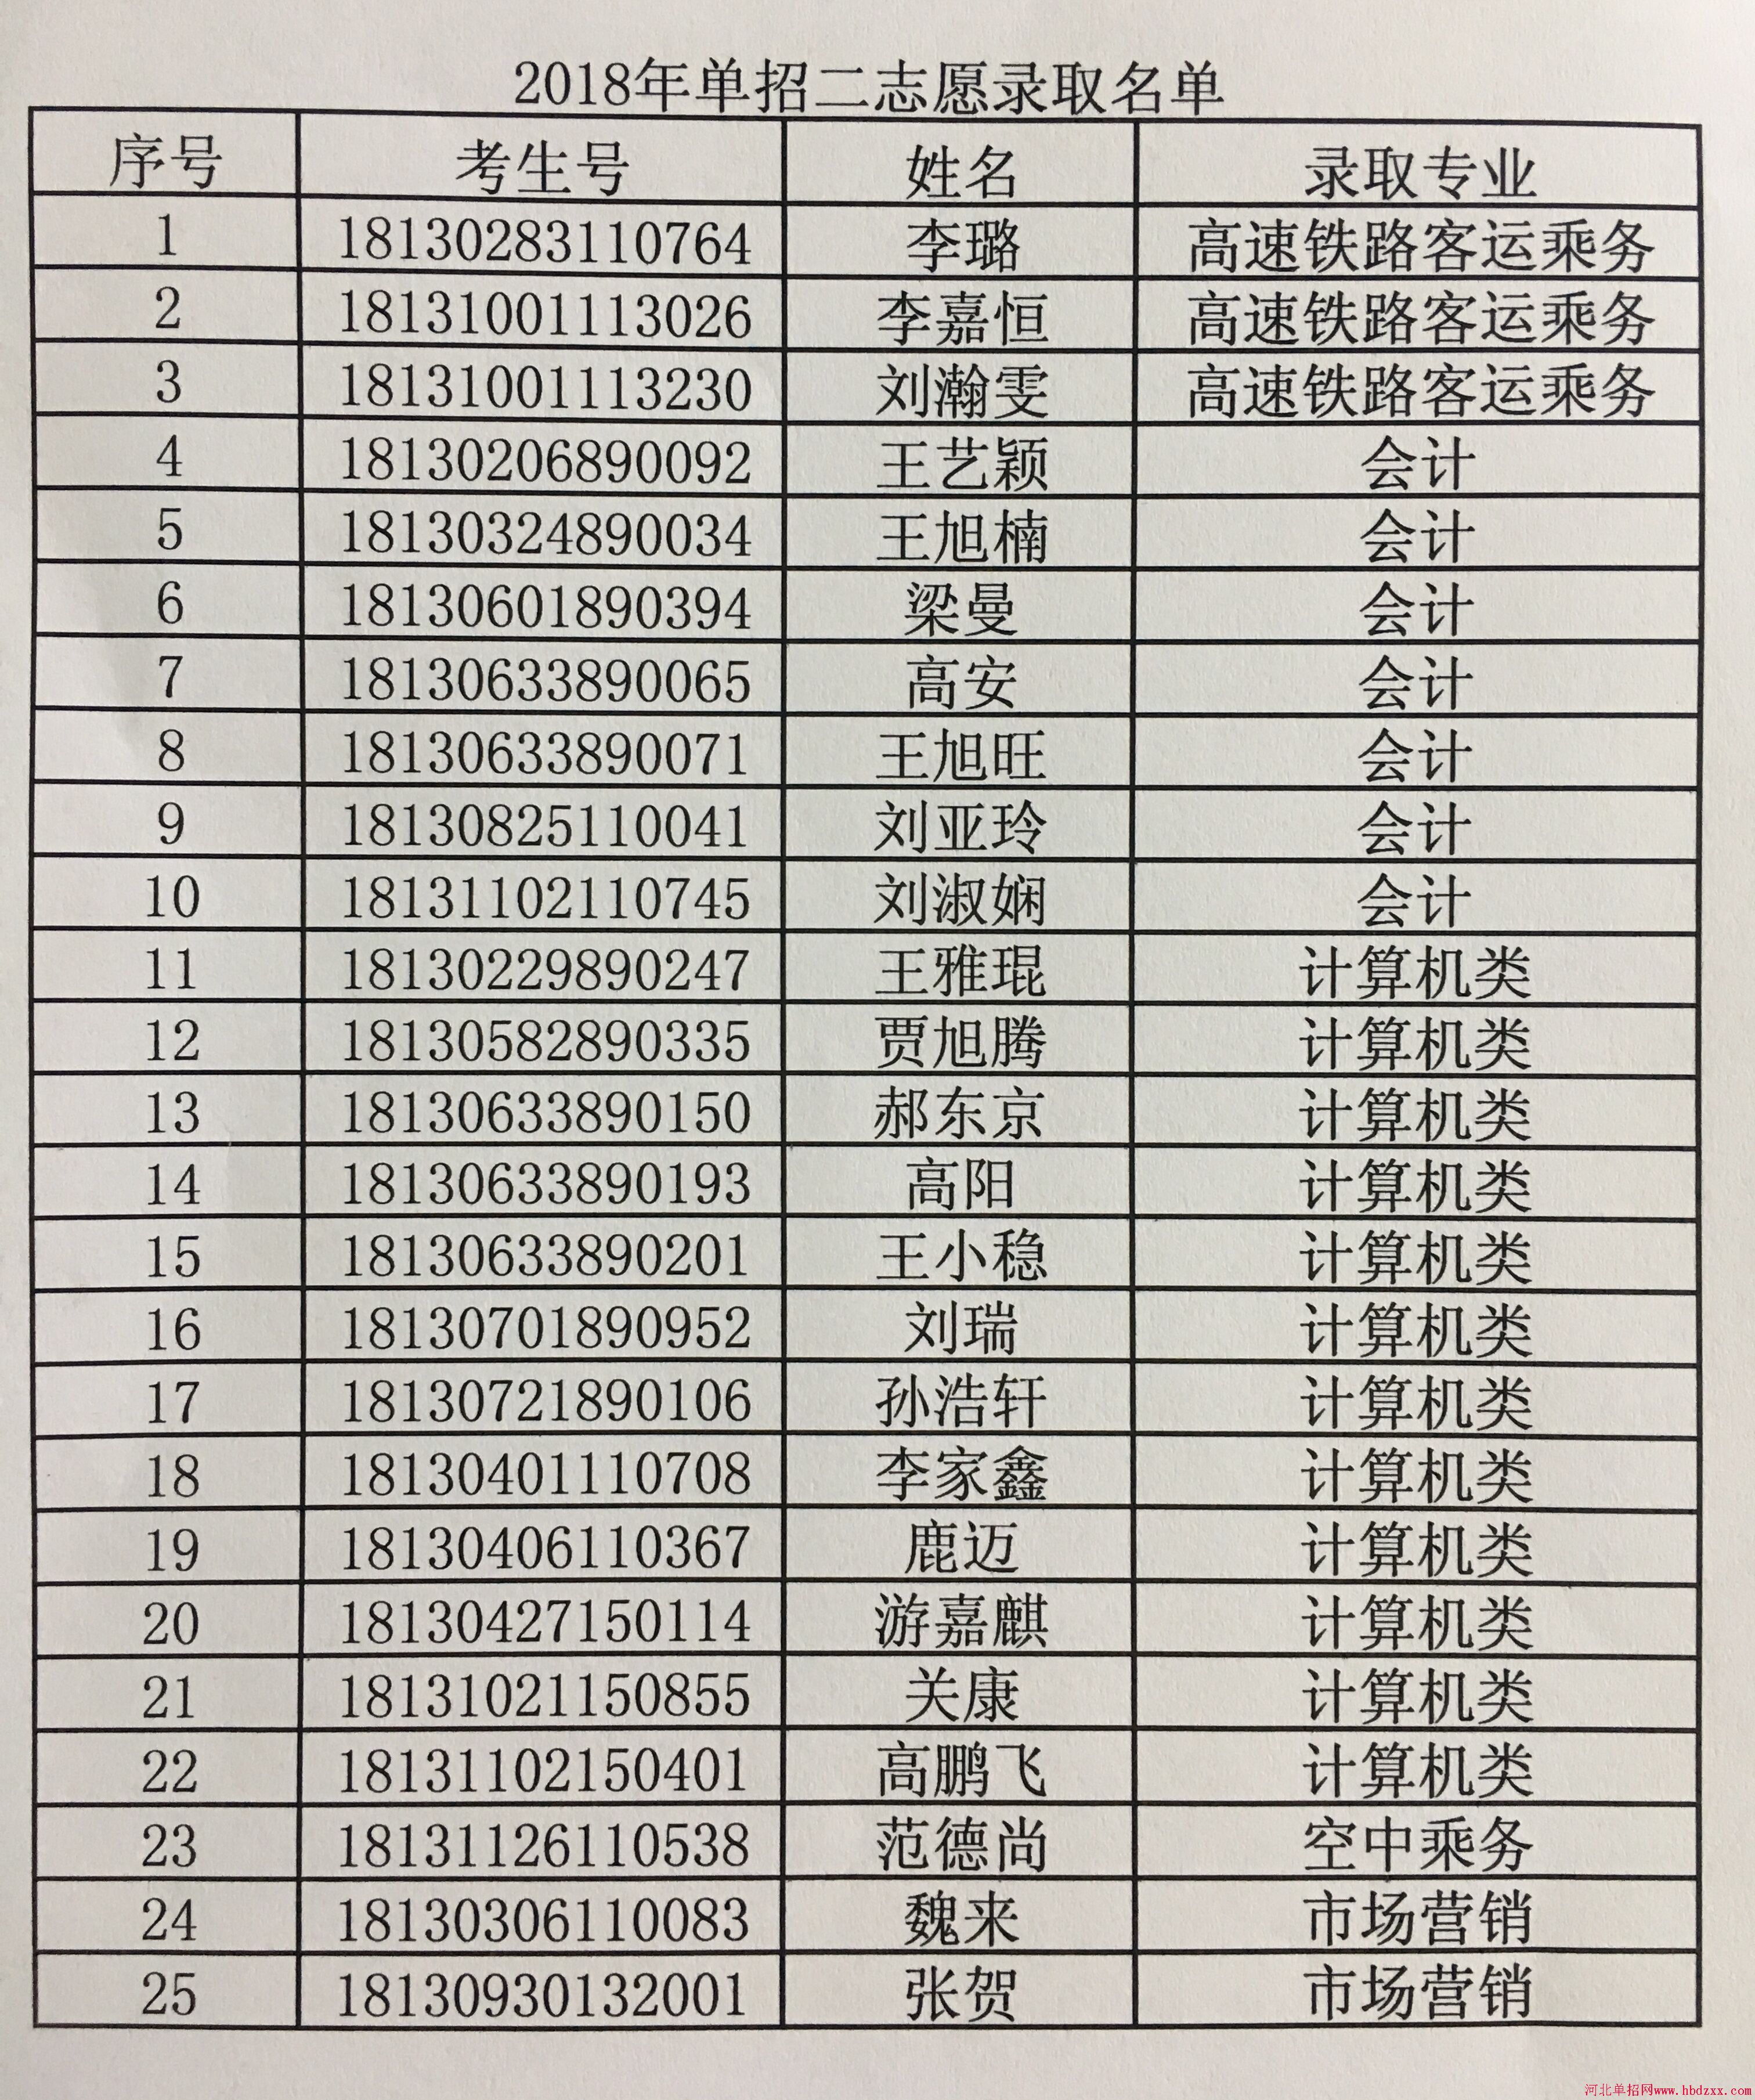 廊坊燕京职业技术学院2018年单招征集愿录取名单